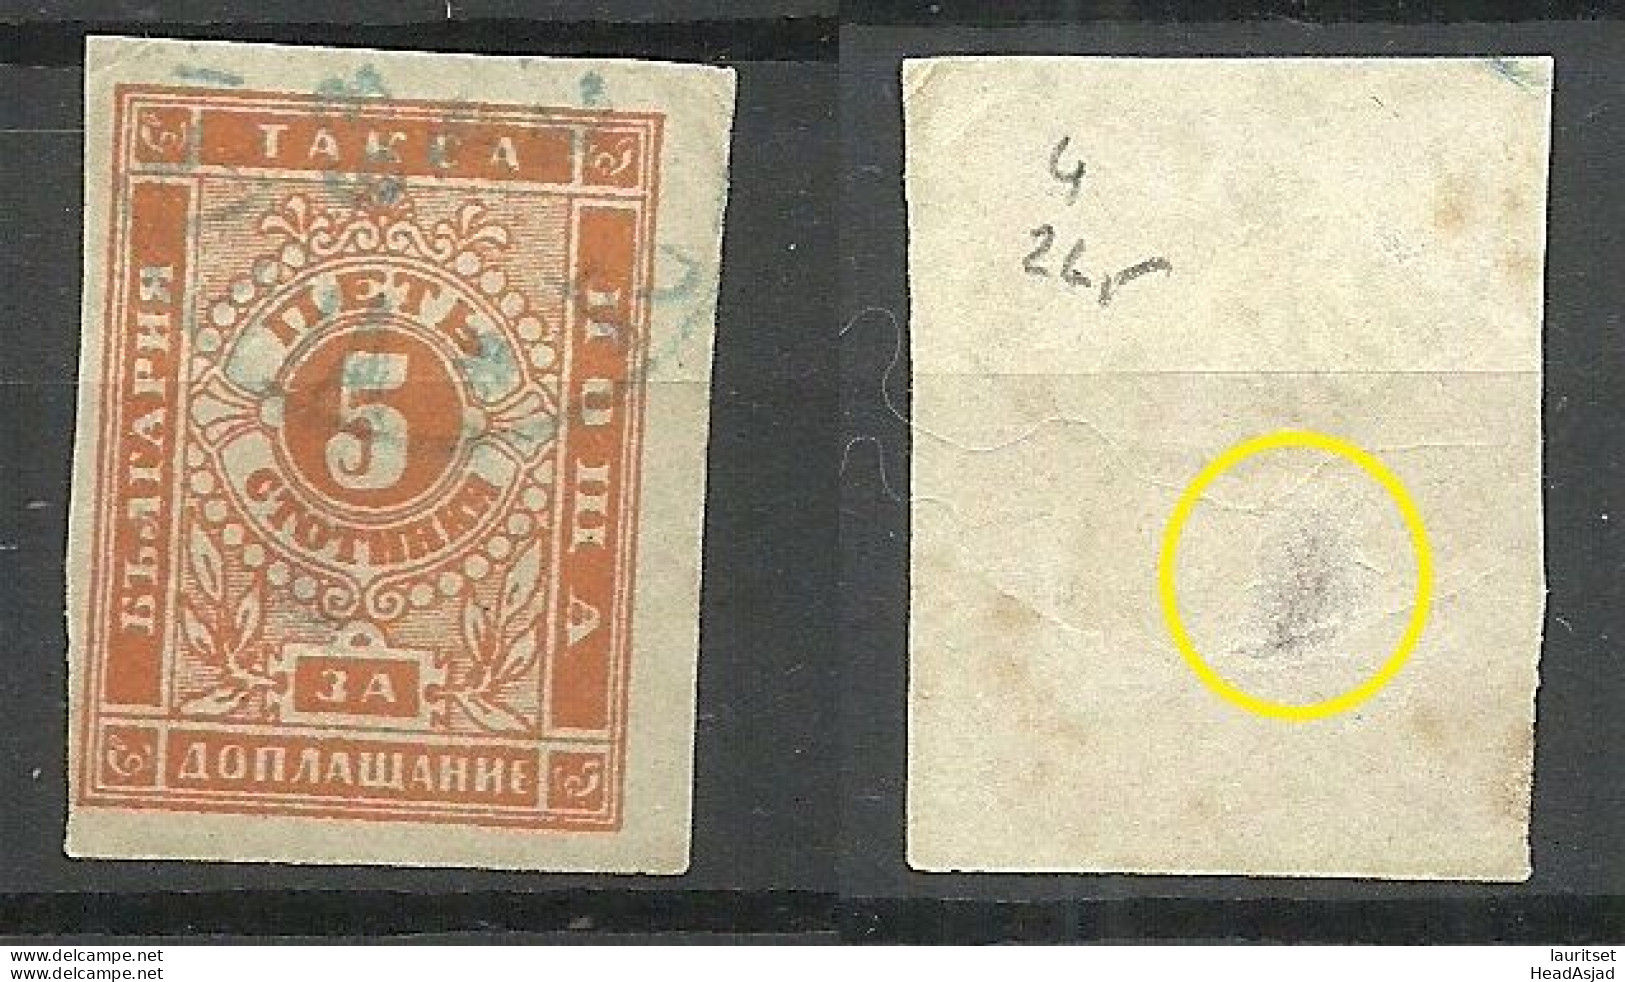 BULGARIA Bulgarien 1885/86 Michel 4 O Portomarke Postage Due Taxe NB! Thin Spot! - Postage Due